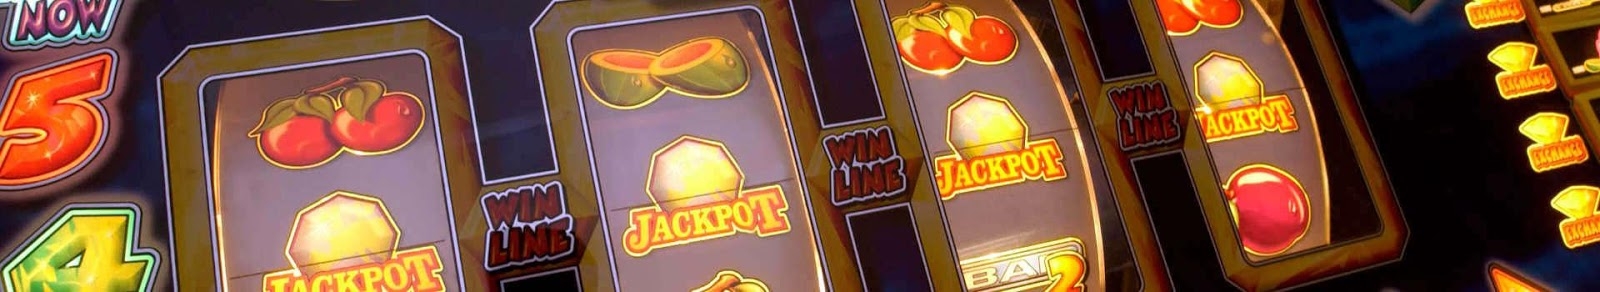 Slots Deals Gambling